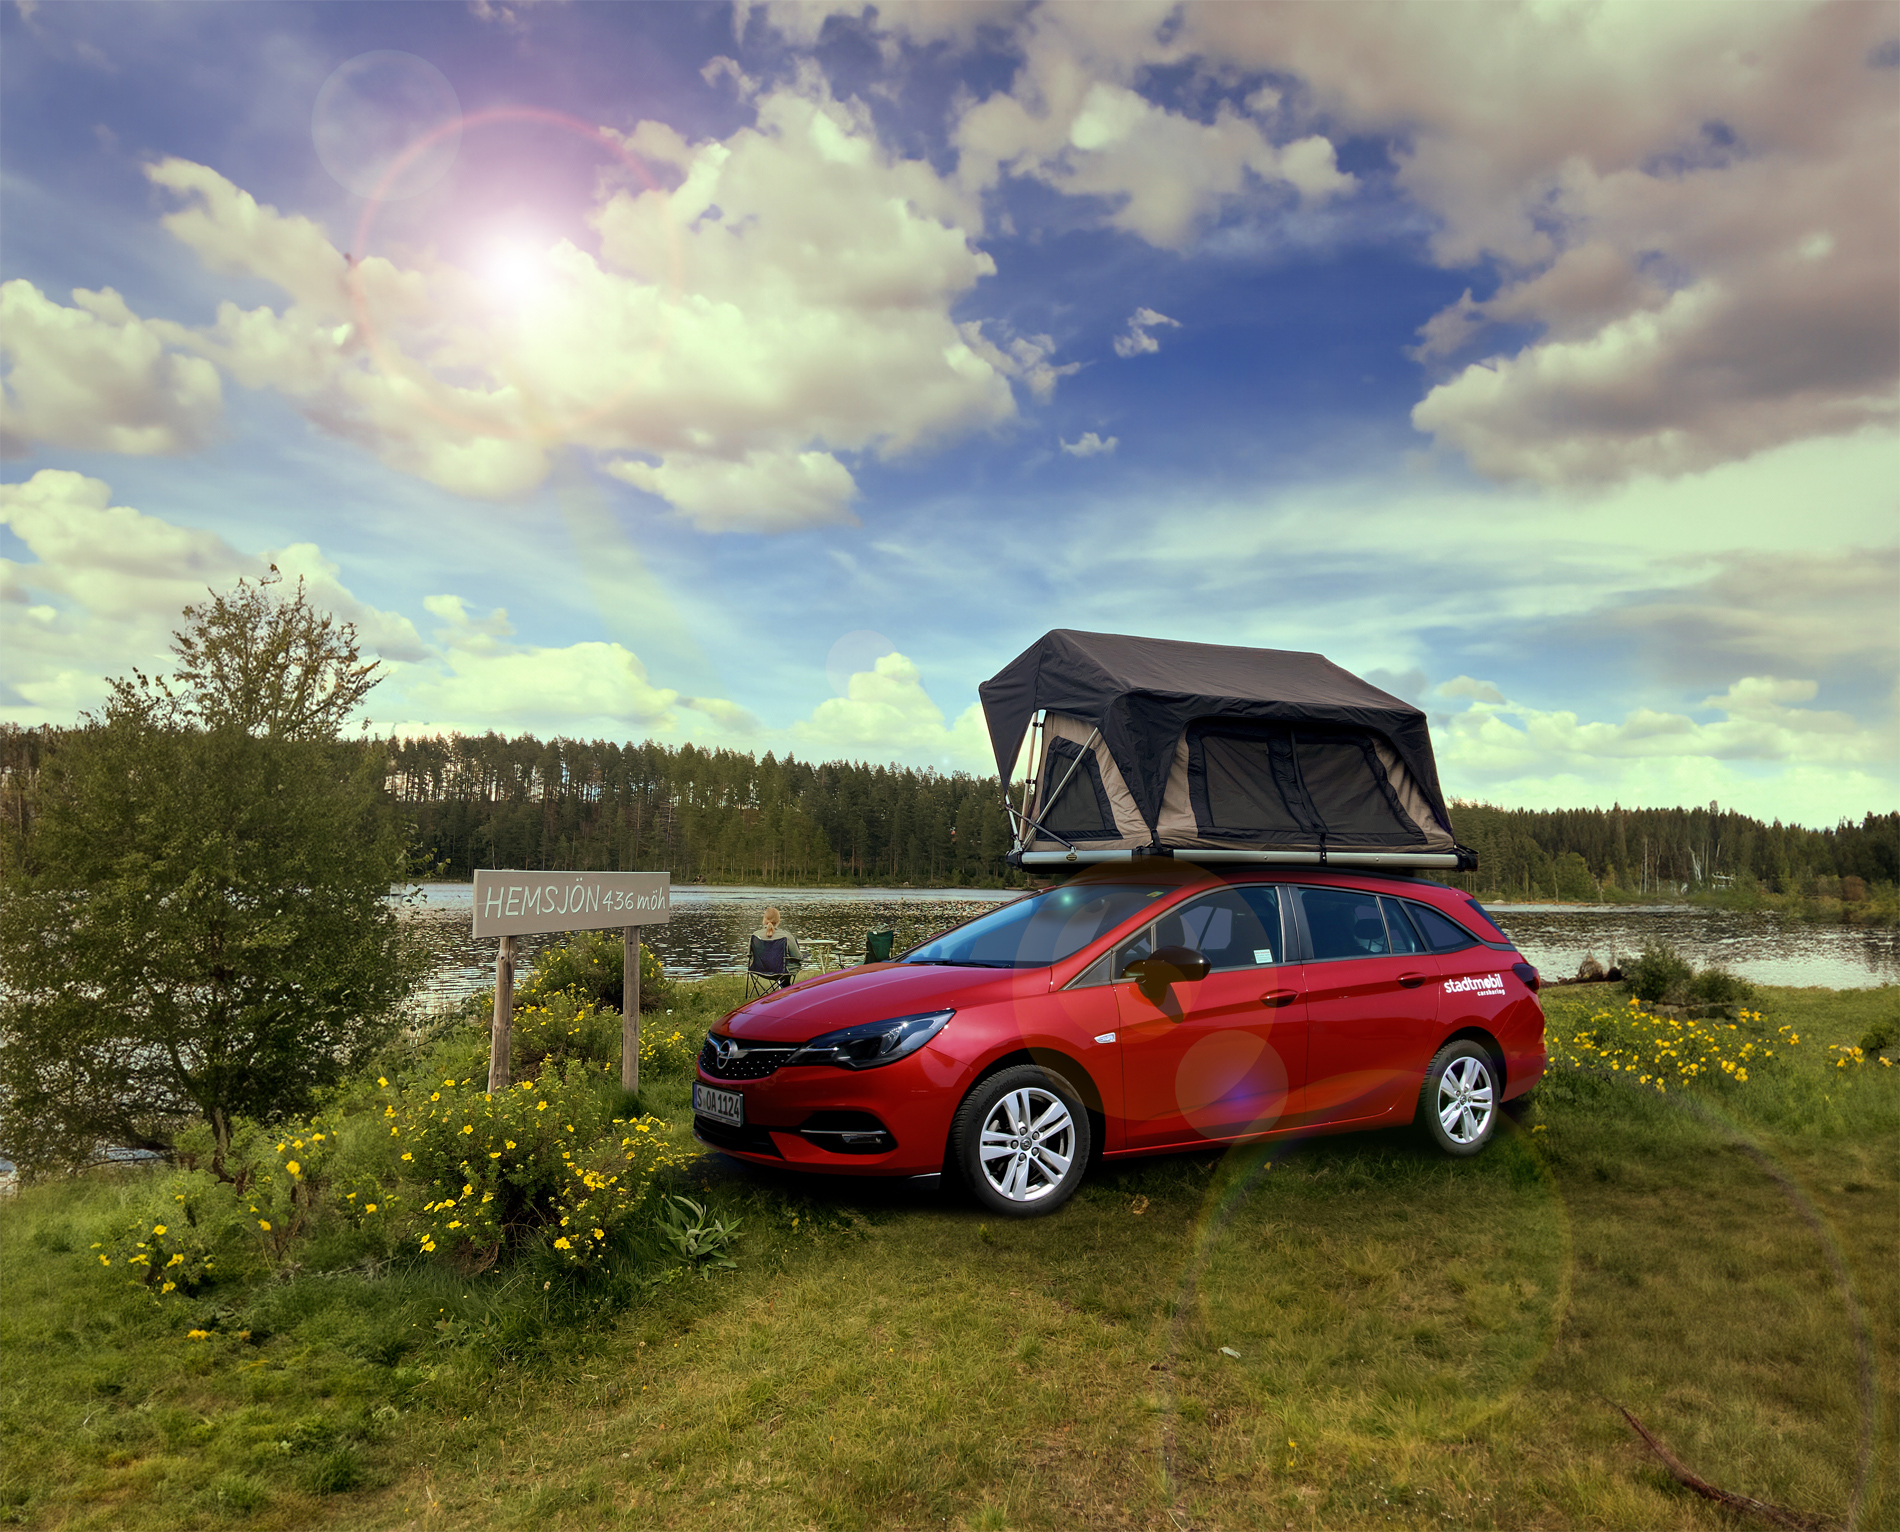 Camping-Car-Sharing: Der Dachzelt-Verleih seezeit und stadtmobil kooperieren